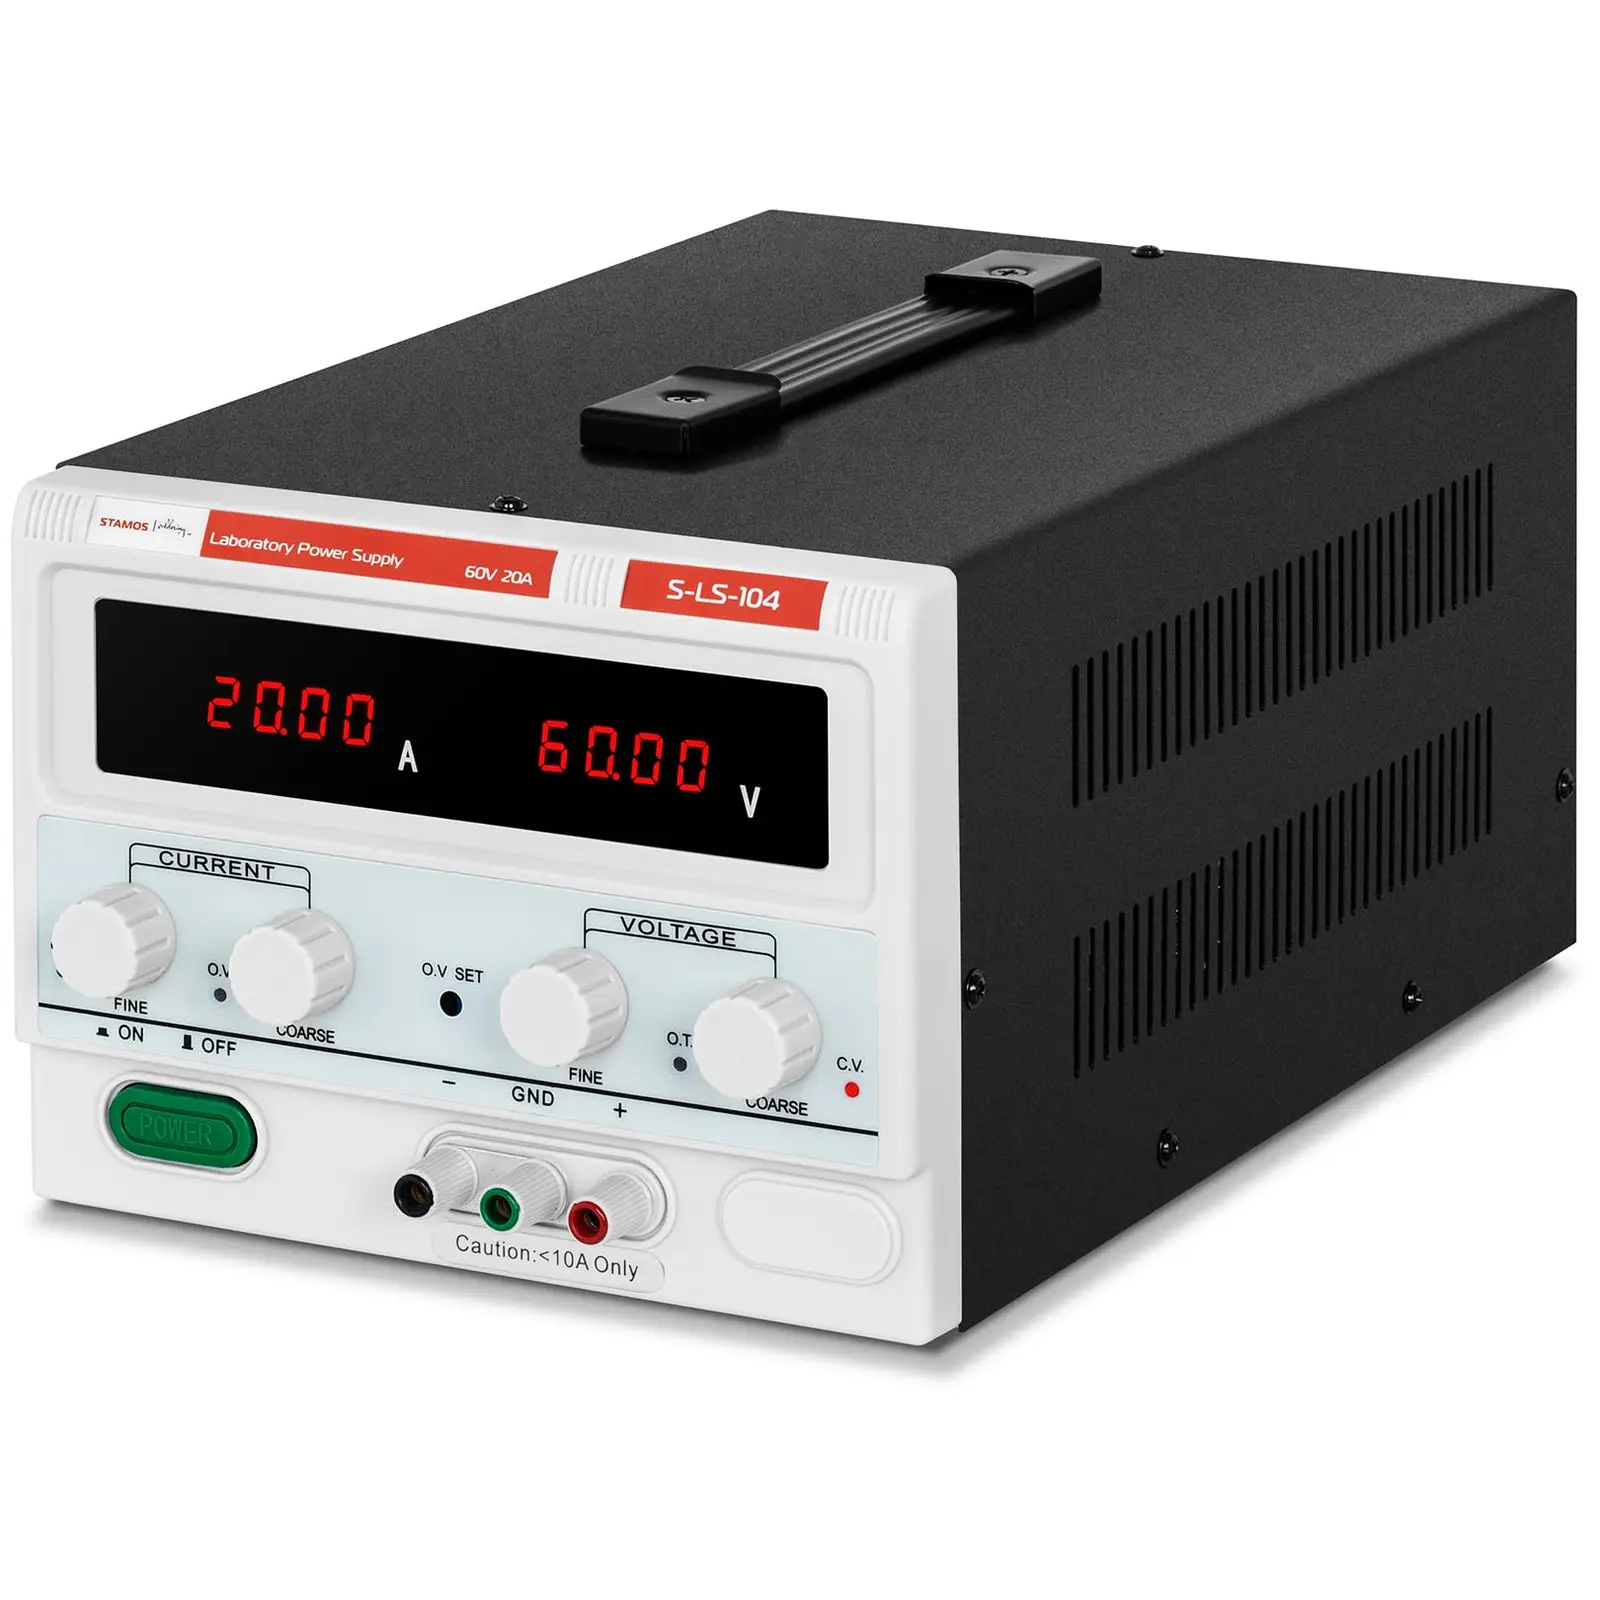 Fuente de alimentación para laboratorio - 0 - 60 V - 0 - 20 A DC - 1,200 W - pantalla LED de cuatro dígitos